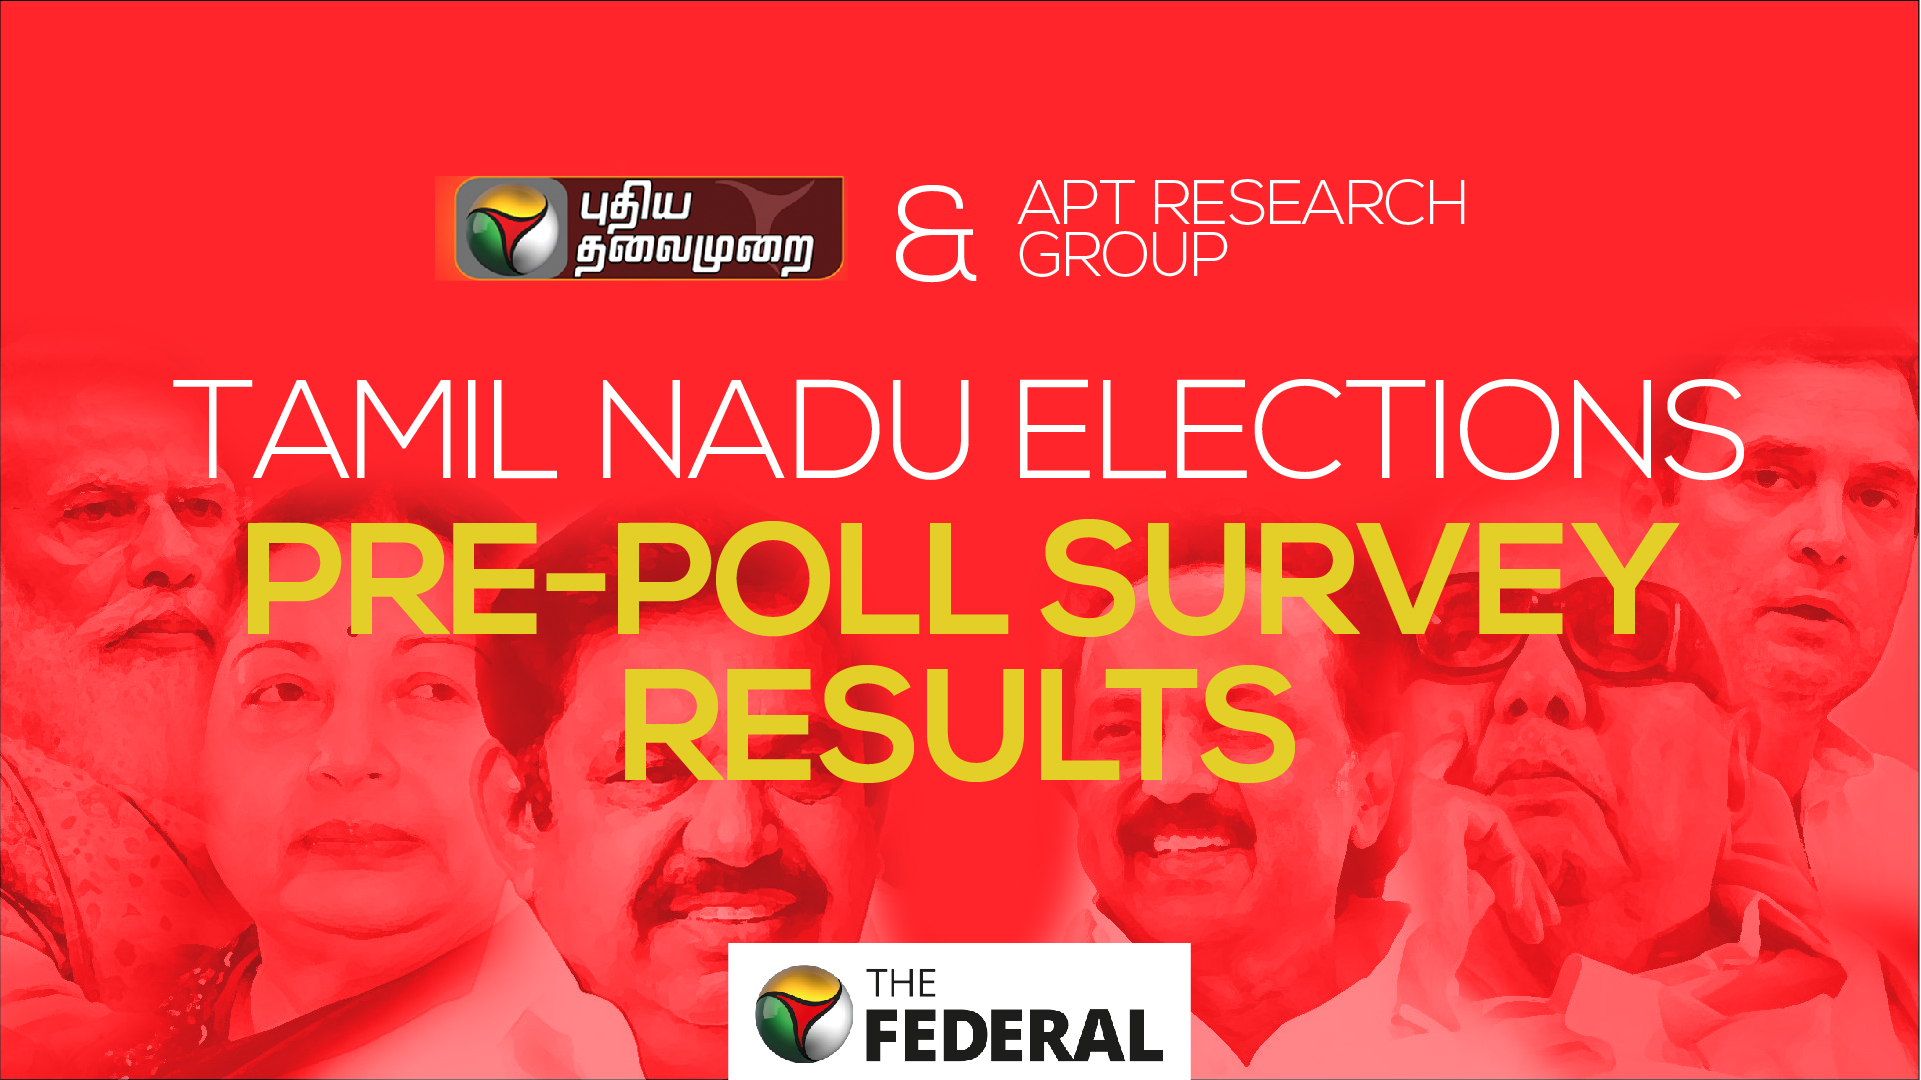 Mood of Tamil Nadu: Pre-Poll Survey